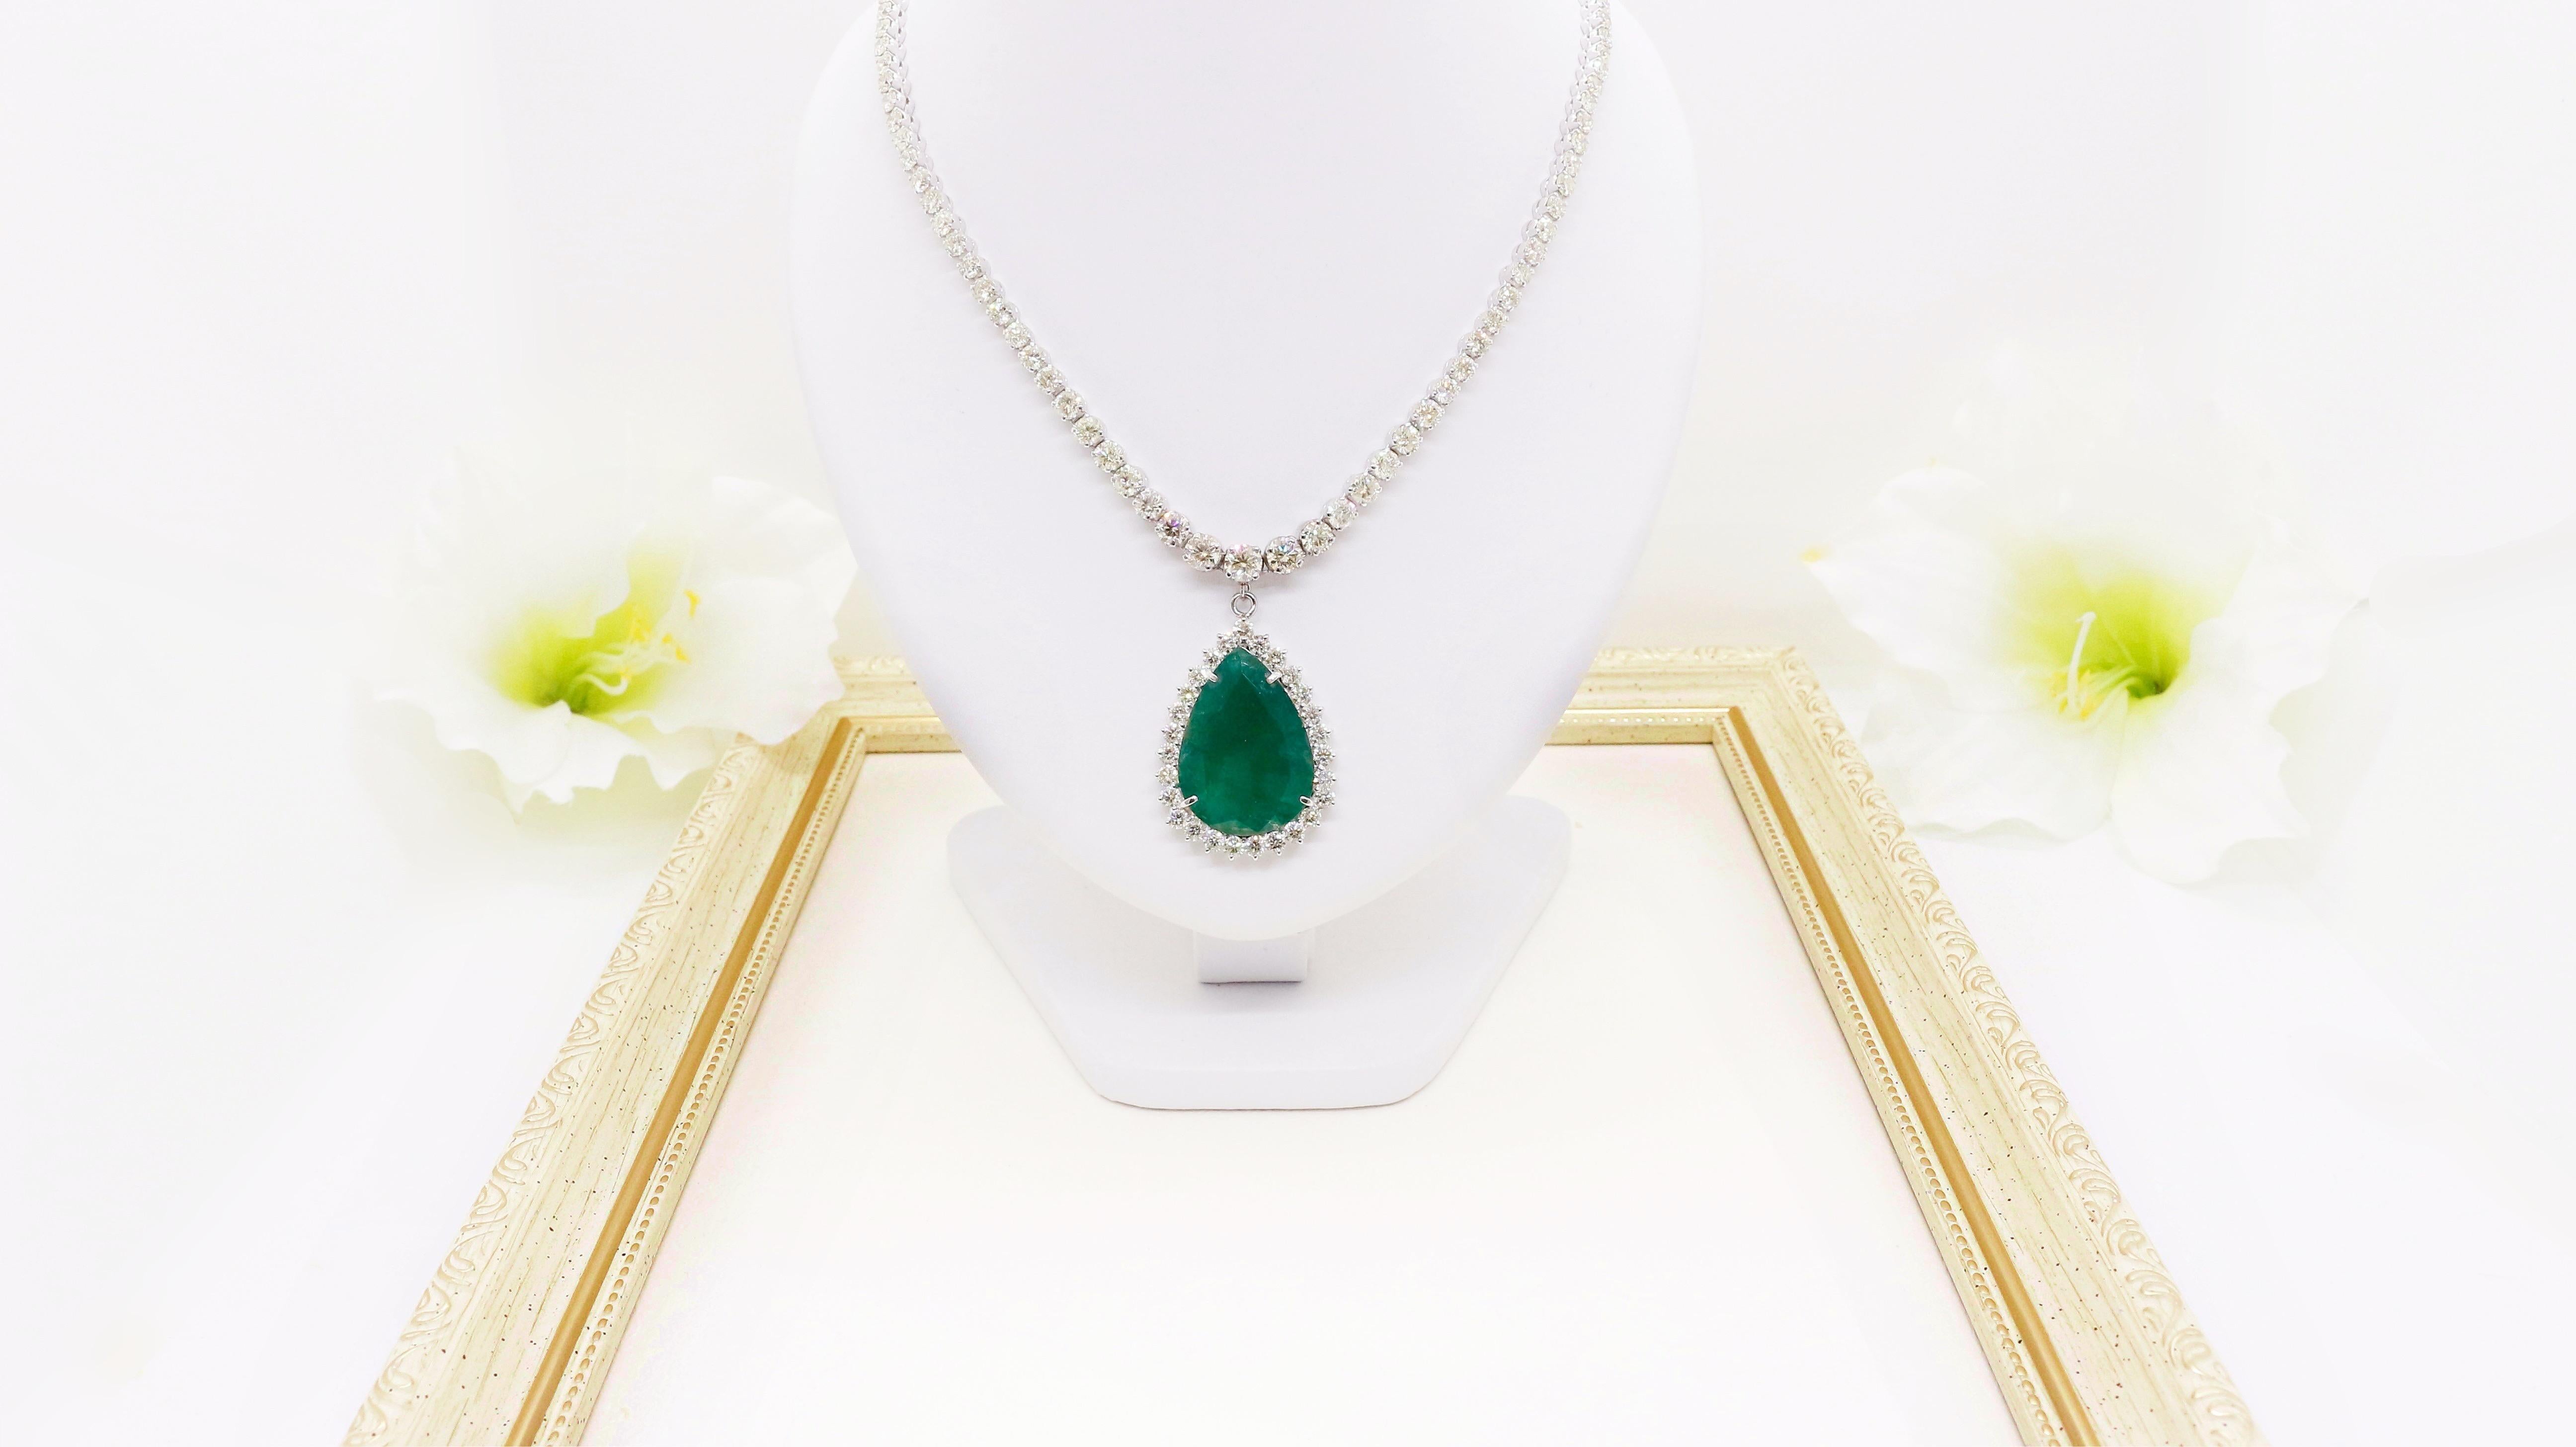 *39 Karat Smaragd- und Diamant-Halskette aus 18kt Gold für ein unvergessliches Stil-Statement

Gewicht des Smaragds: 39,92 Karat - Diese exquisite Halskette ist mit einem atemberaubenden Smaragd besetzt, der bemerkenswerte 39,92 Karat wiegt. Der